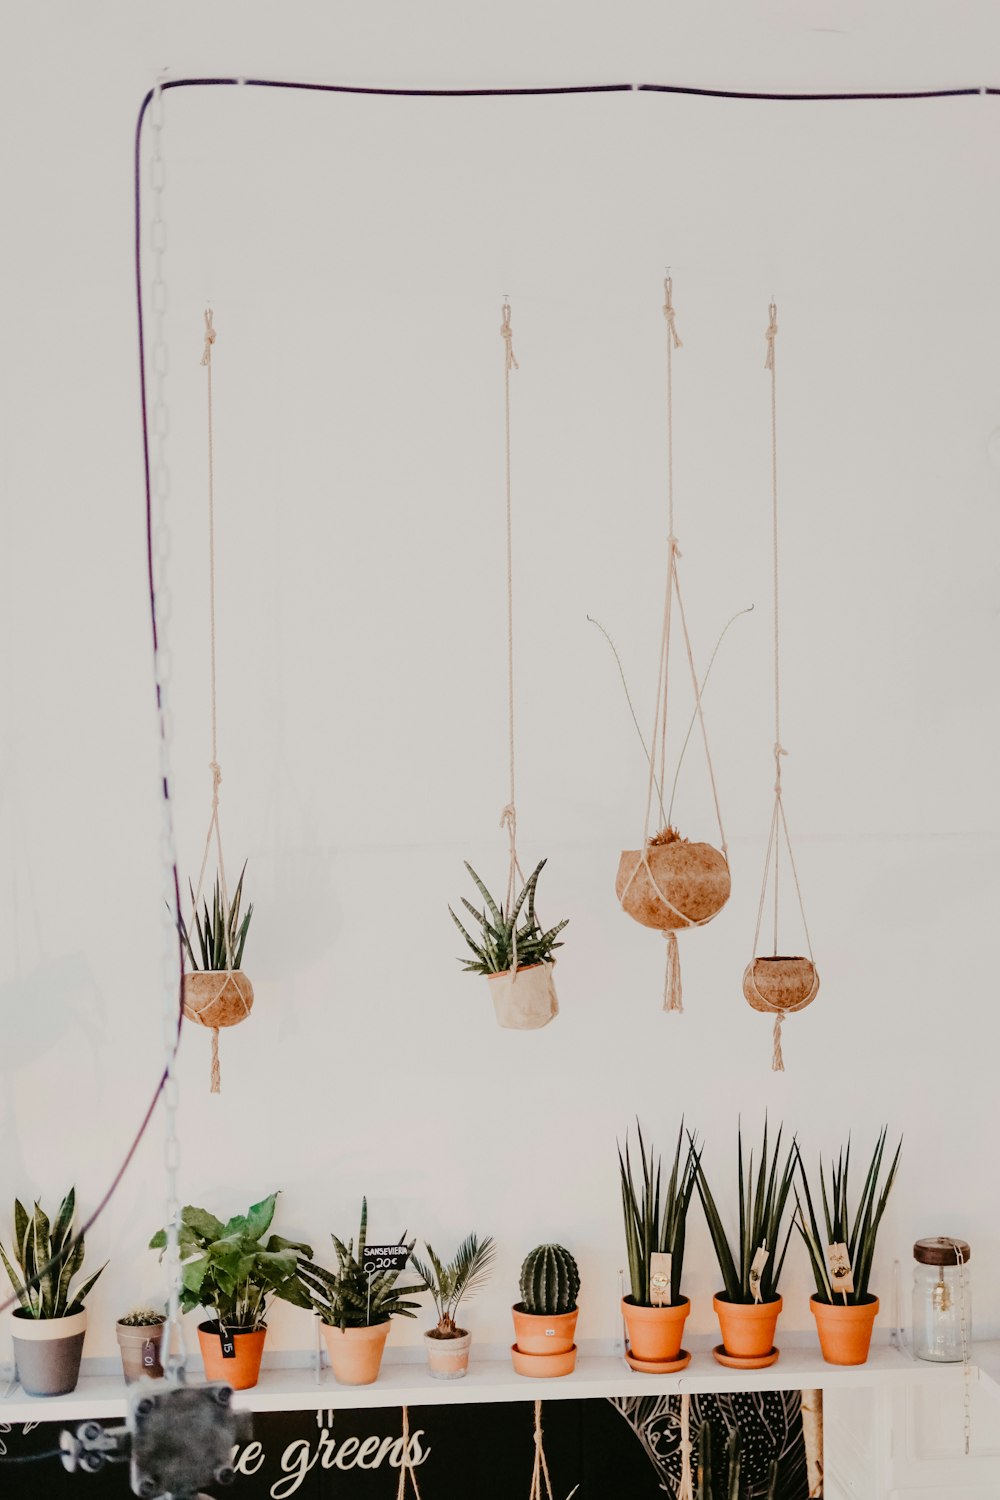 una mesa cubierta con plantas en macetas junto a una pared blanca